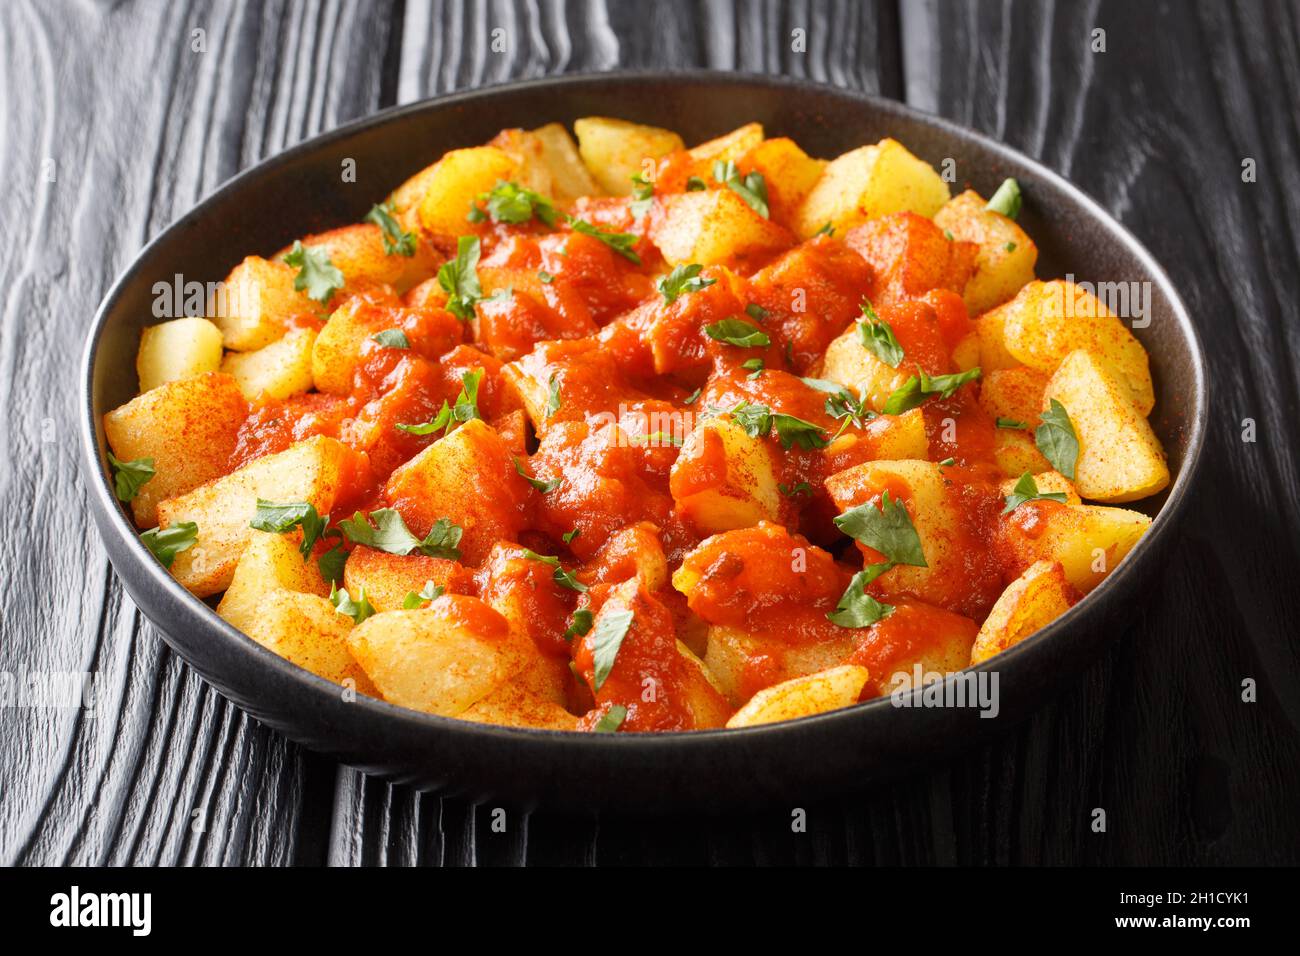 Les patatas bravas ou les pommes de terre en sauce bravas sont un plat de tapas espagnol classique qui se trouve près de l'assiette sur la table.Horizontale Banque D'Images